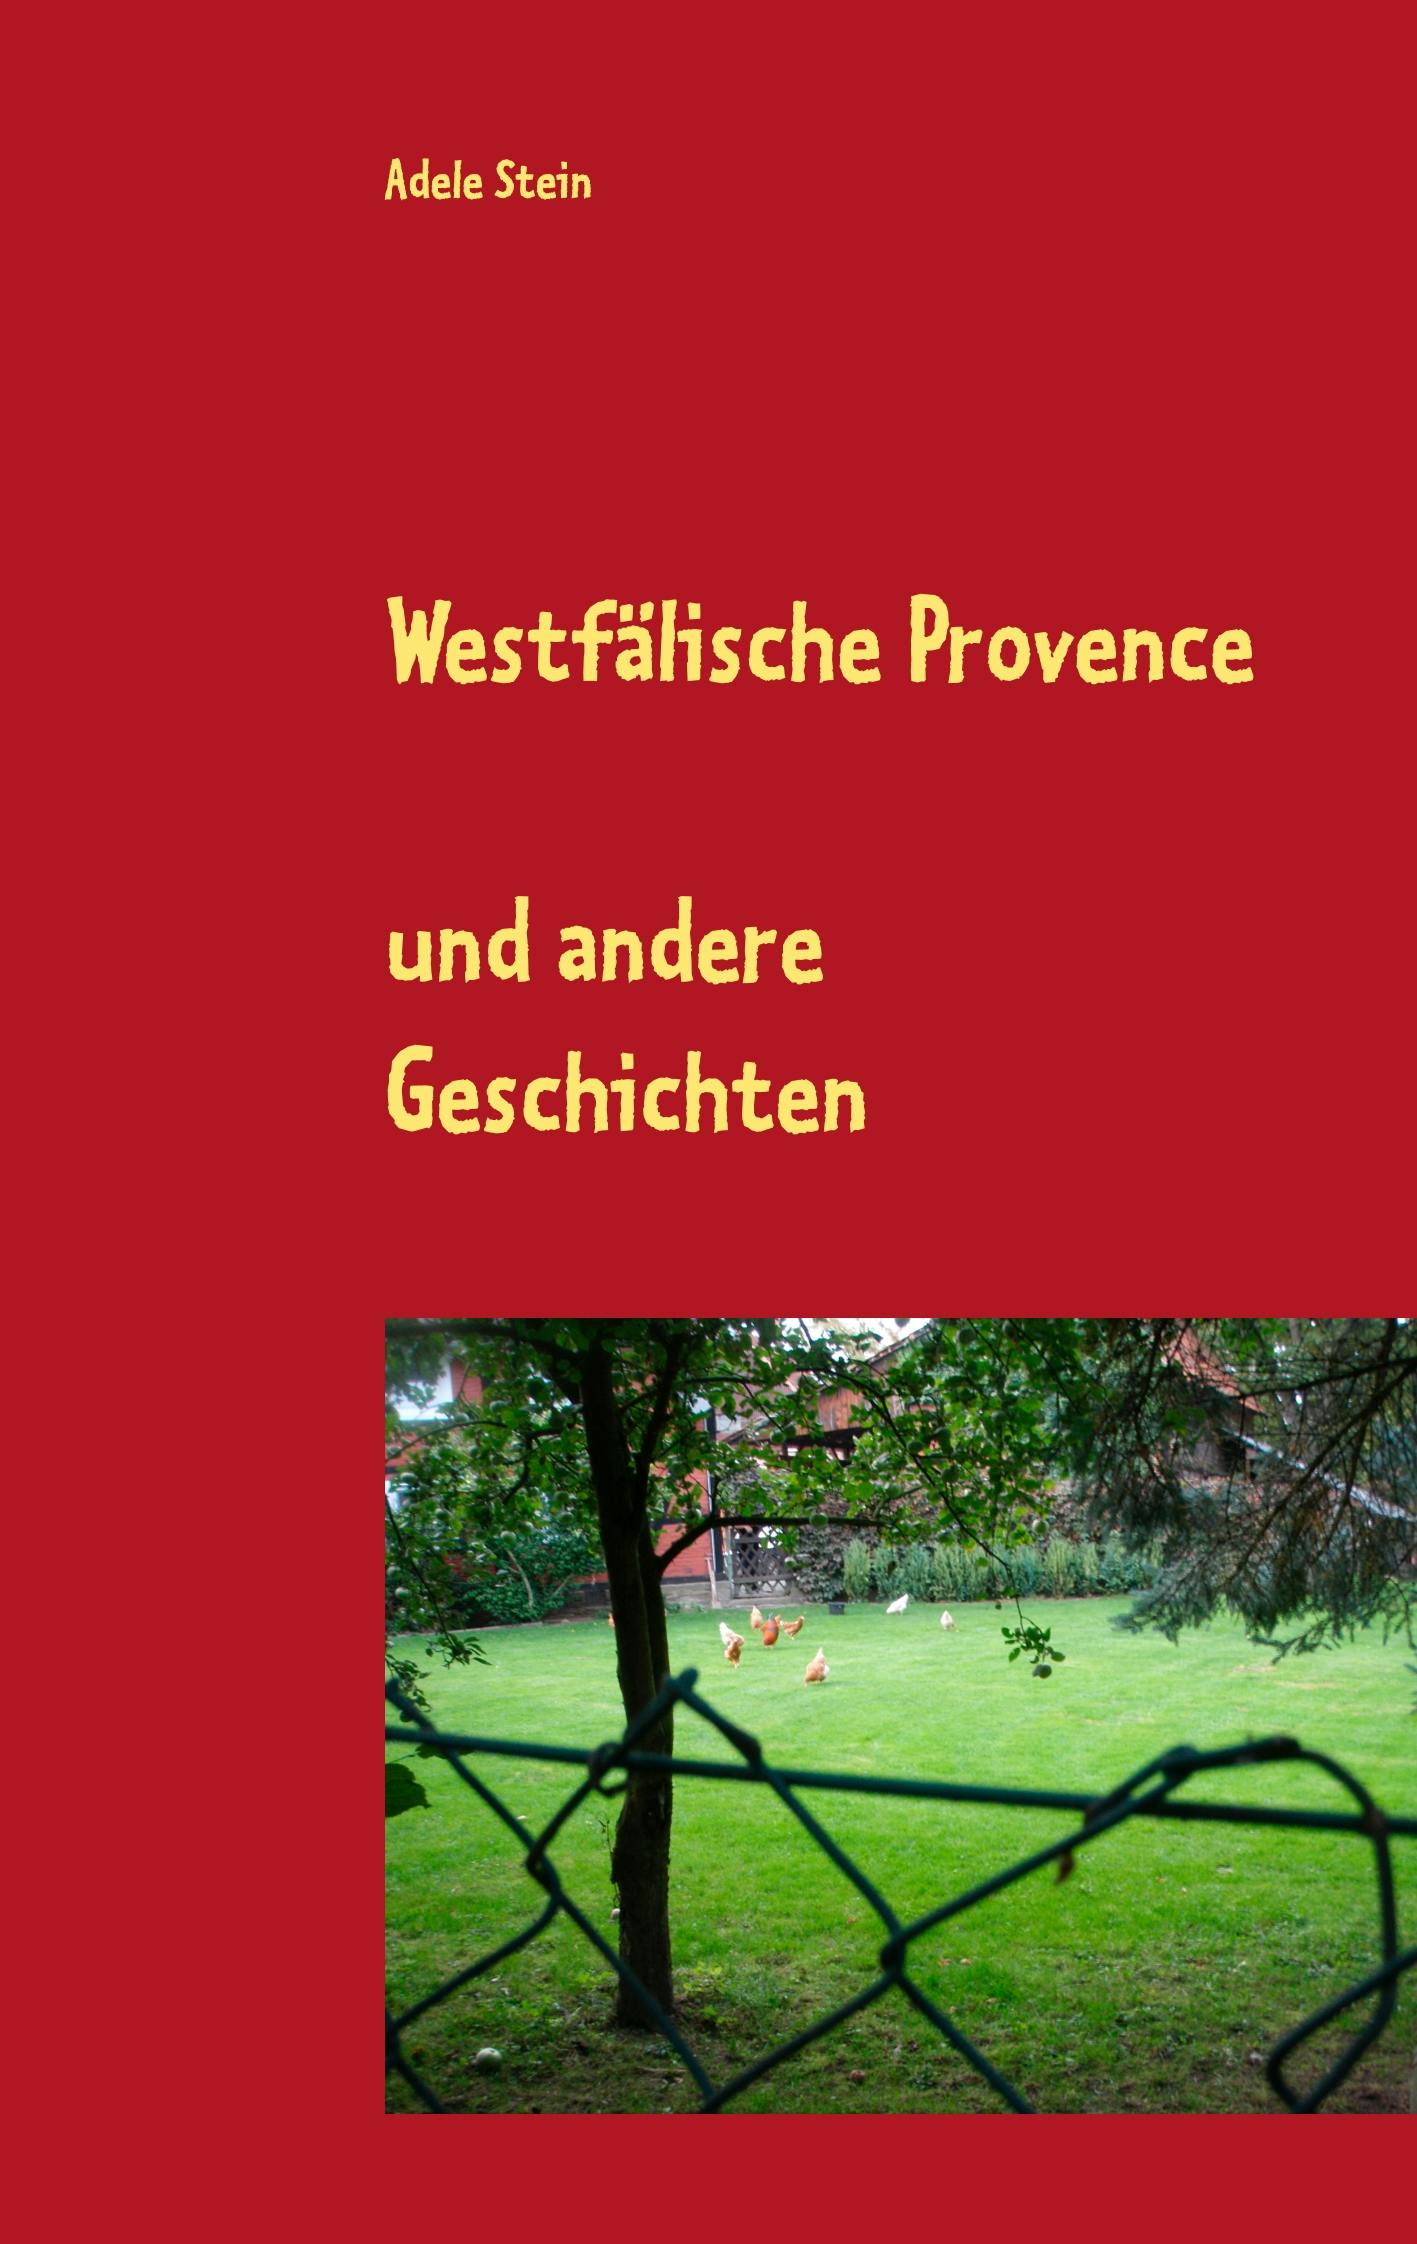 Westfälische Provence - Adele Stein